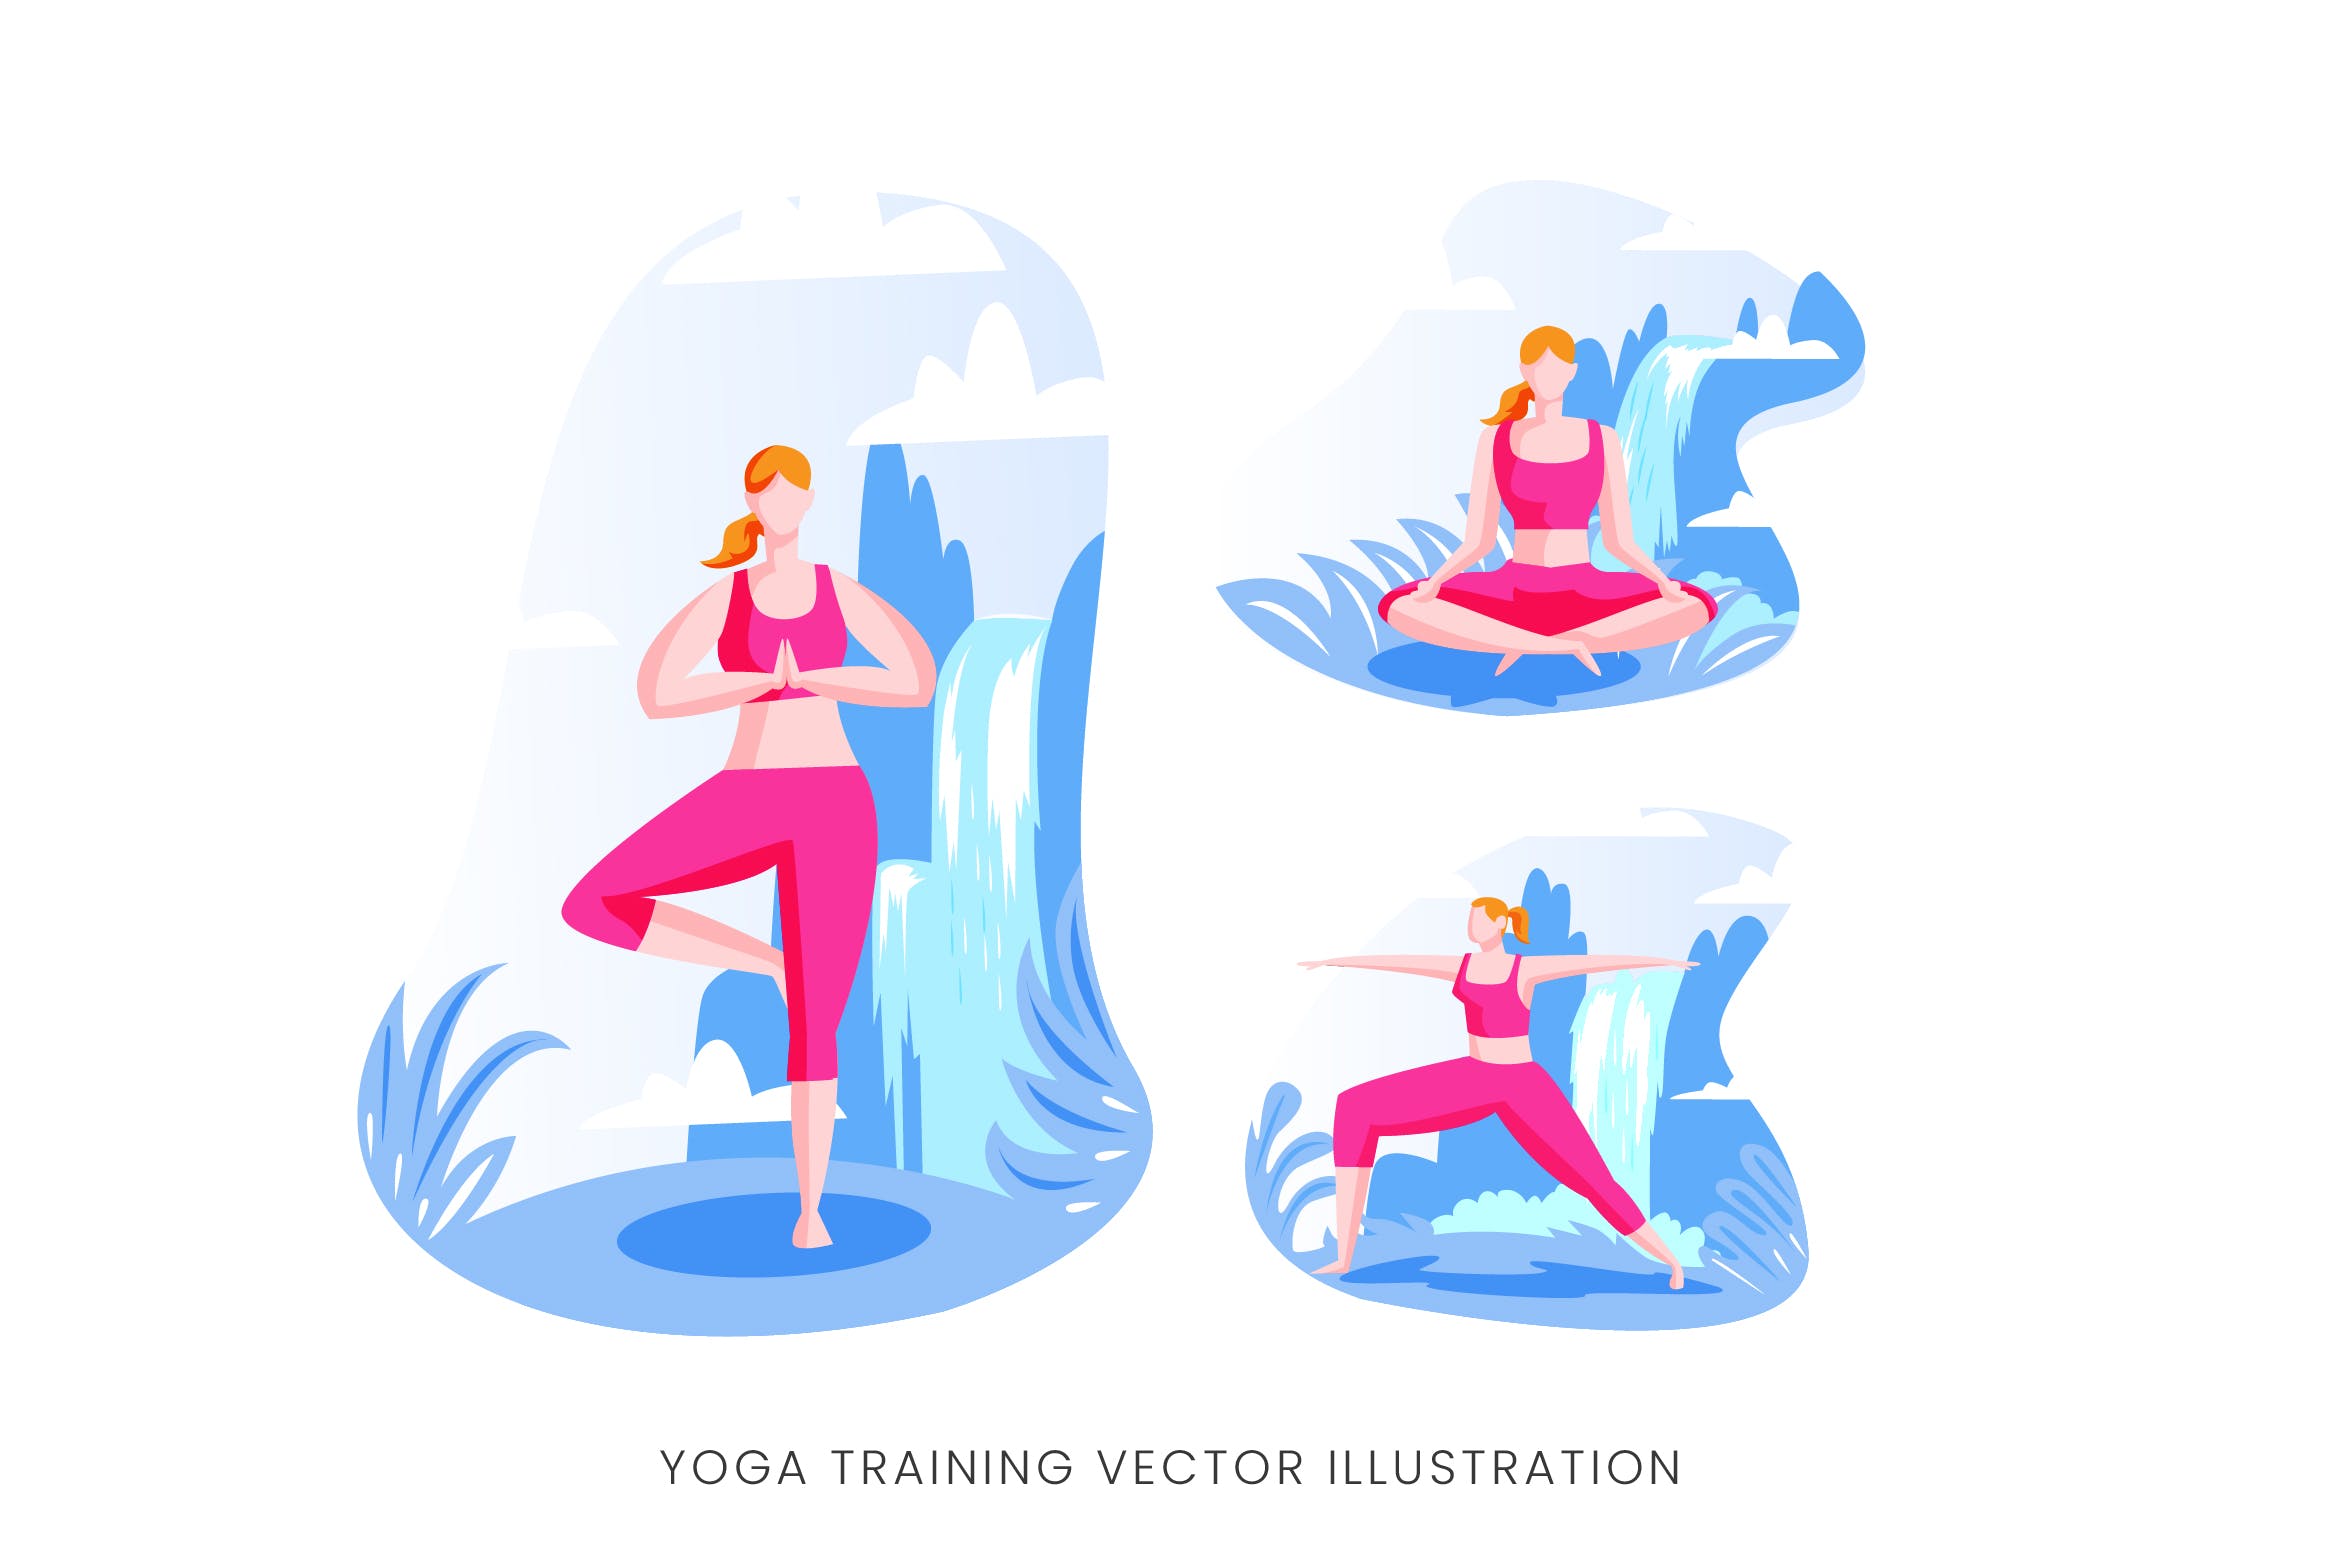 瑜伽训练人物形象矢量手绘第一素材精选设计素材 Yoga Training Vector Character Set插图